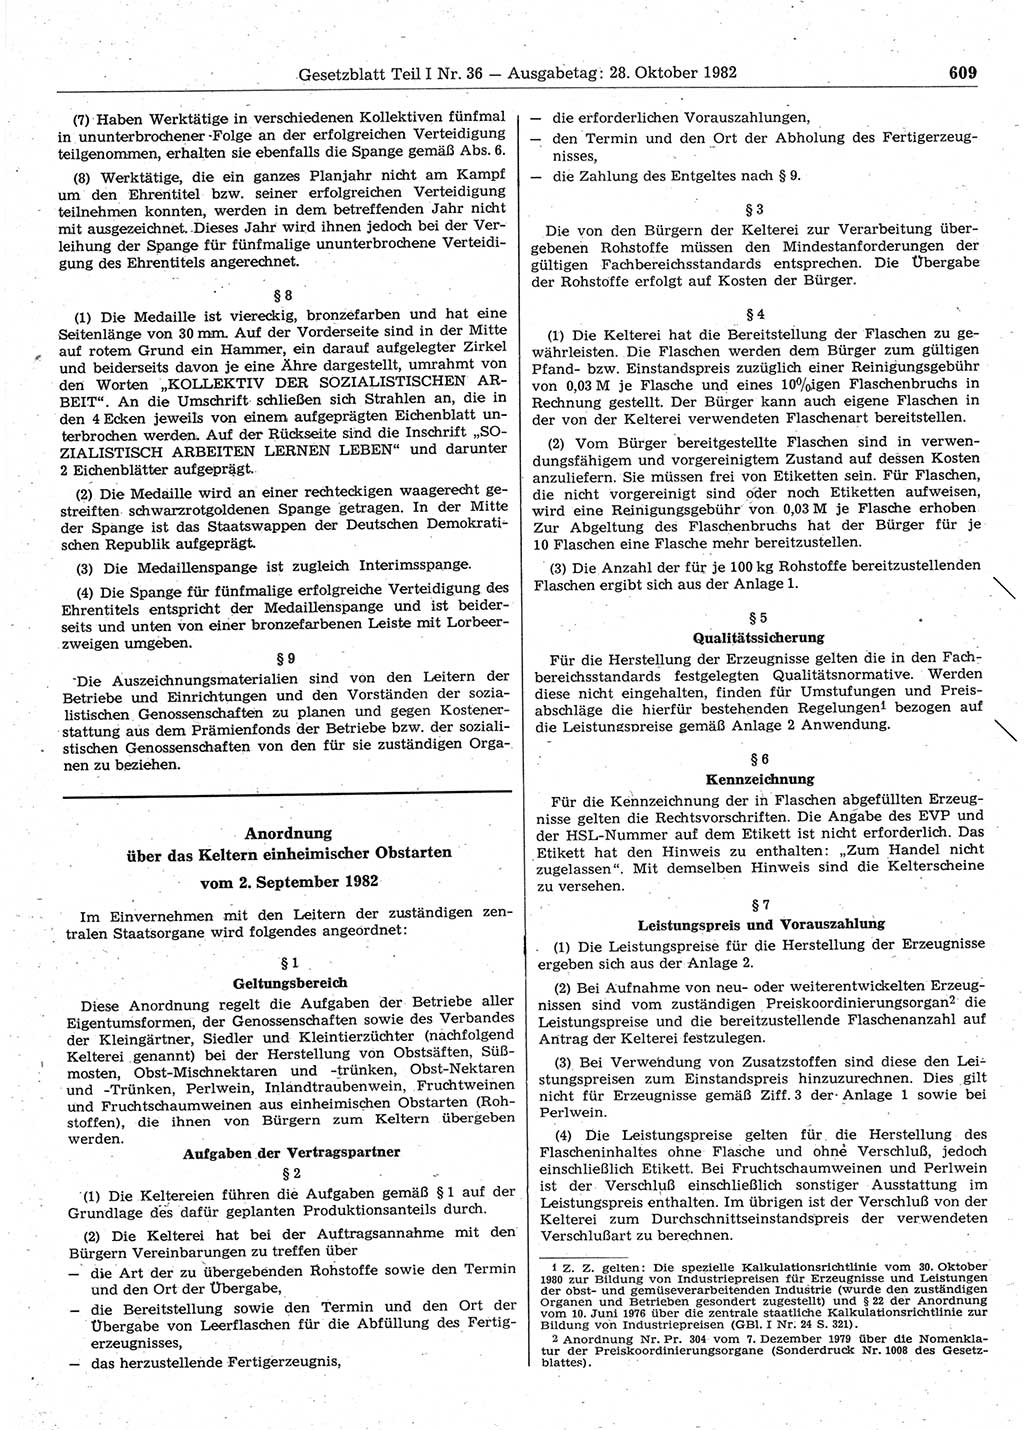 Gesetzblatt (GBl.) der Deutschen Demokratischen Republik (DDR) Teil Ⅰ 1982, Seite 609 (GBl. DDR Ⅰ 1982, S. 609)